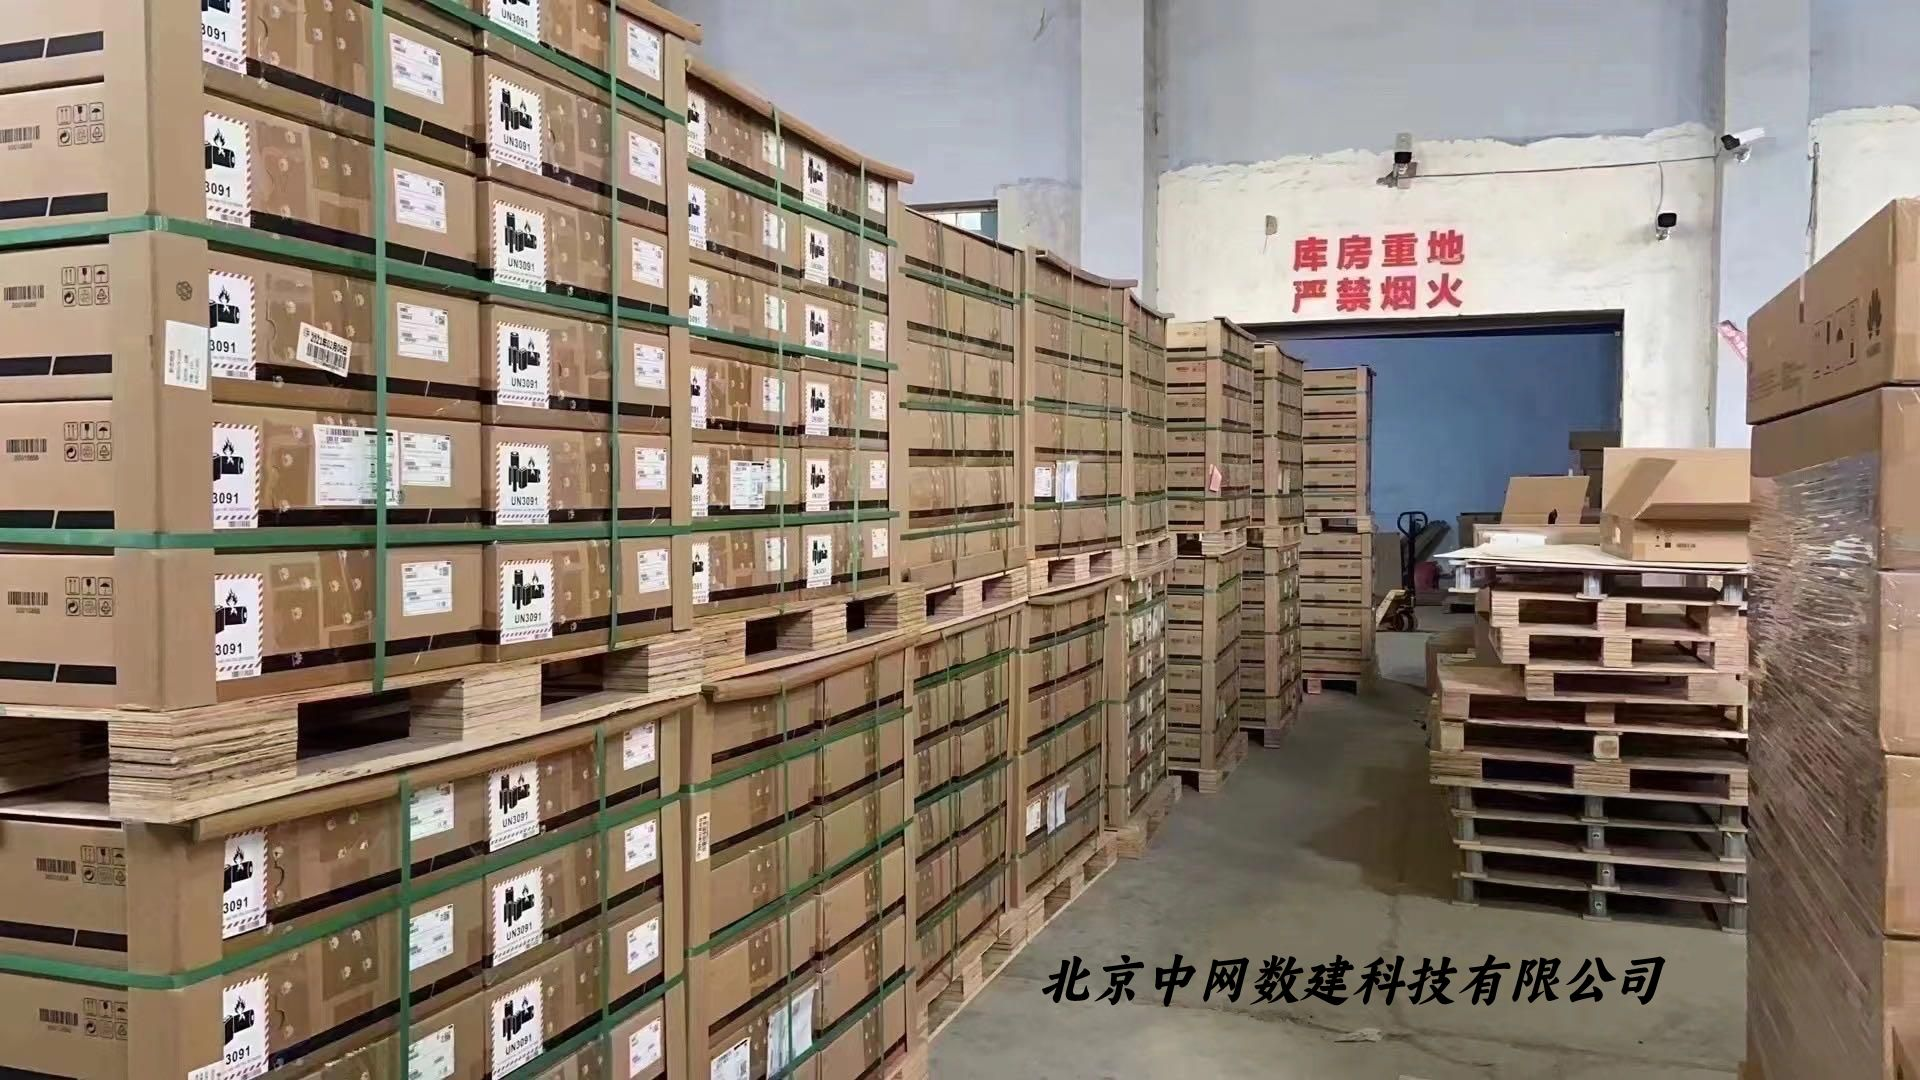 Beijing Zhongwang Shujian Technology Co., Ltd